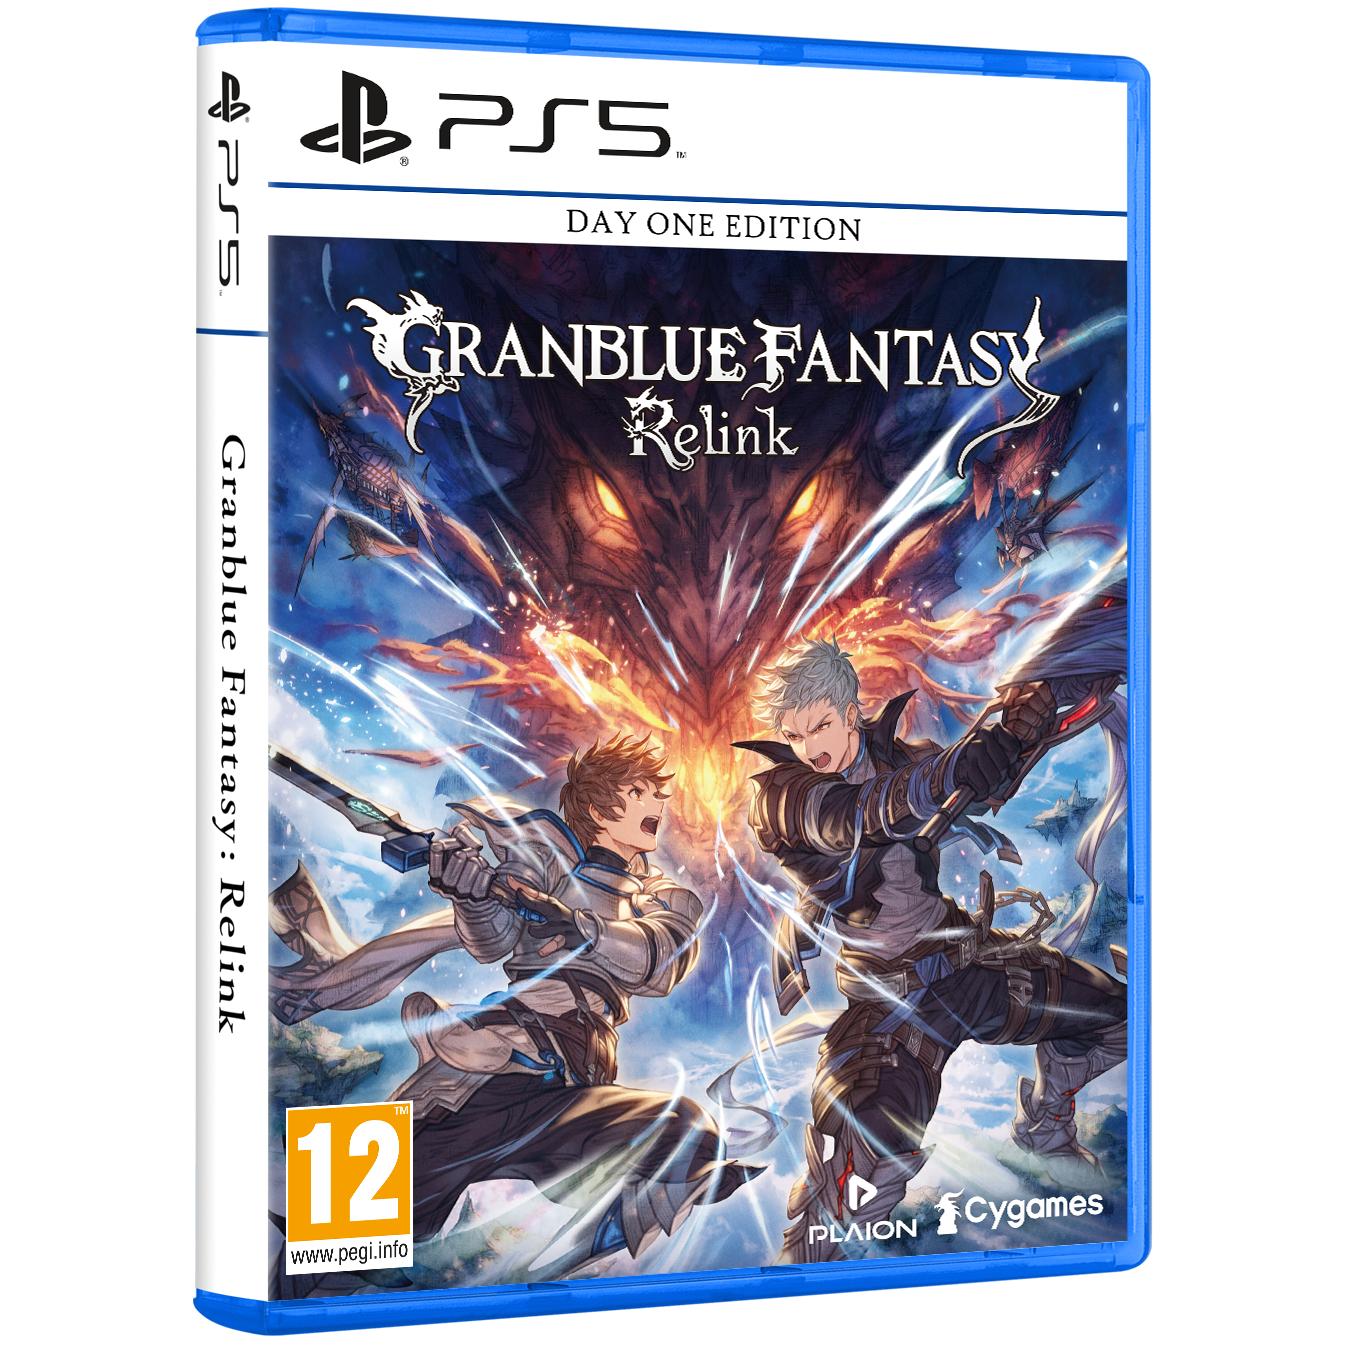 Playstation - Granblue Fantasy Relink Day One Edition - PS5 - Nuevo Precintado - PAL España